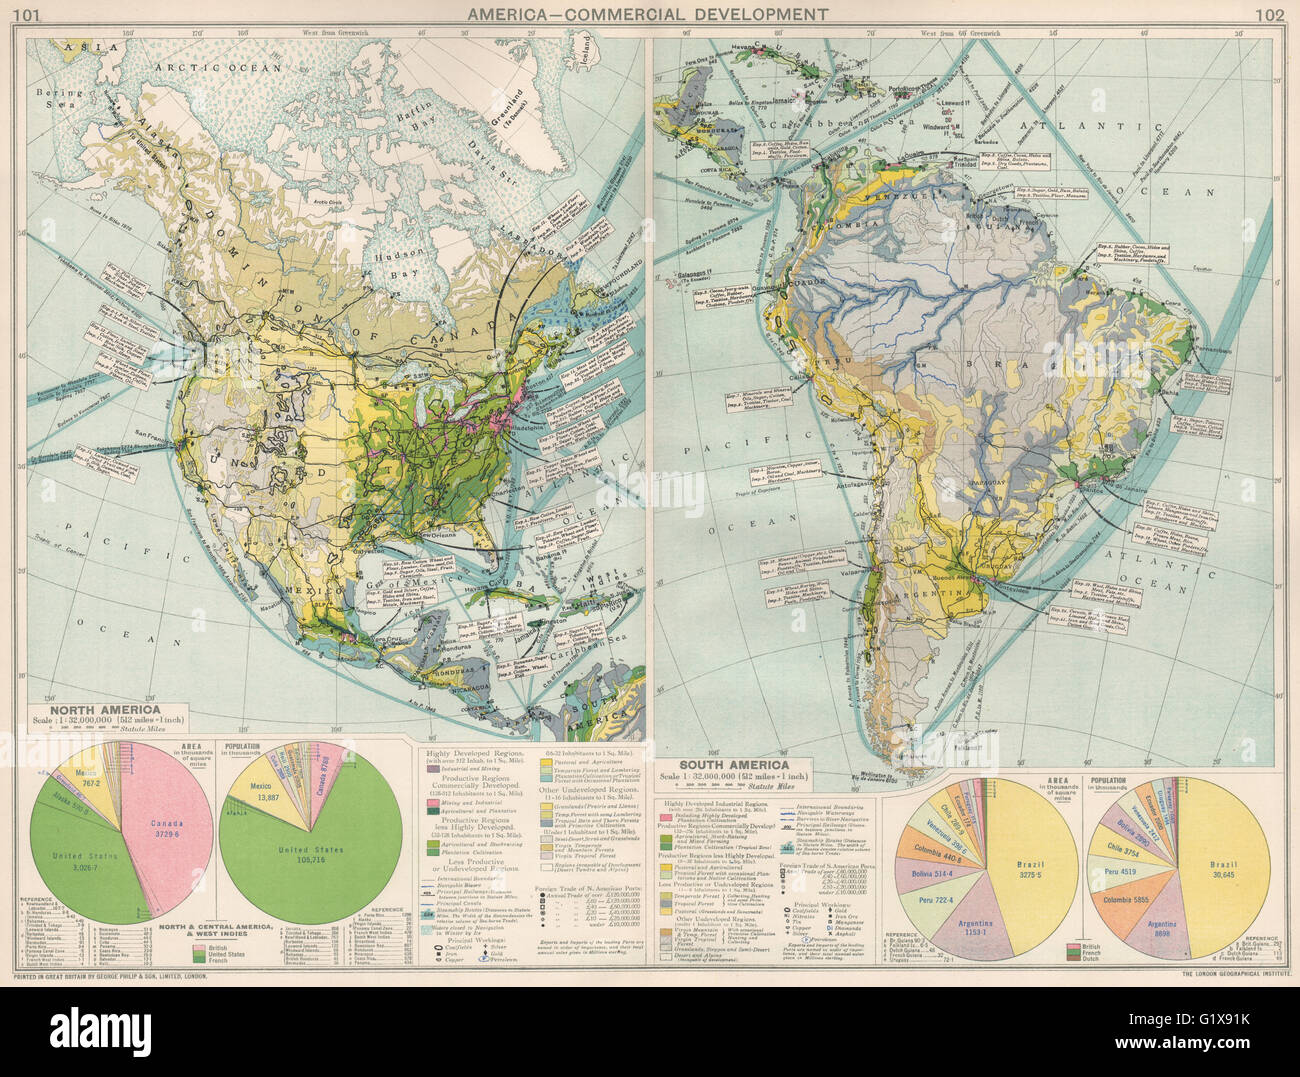 & Süd Nordamerika. Kommerzielle Entwicklung. Importieren Sie & Exportrouten Sie, 1925-Karte Stockfoto